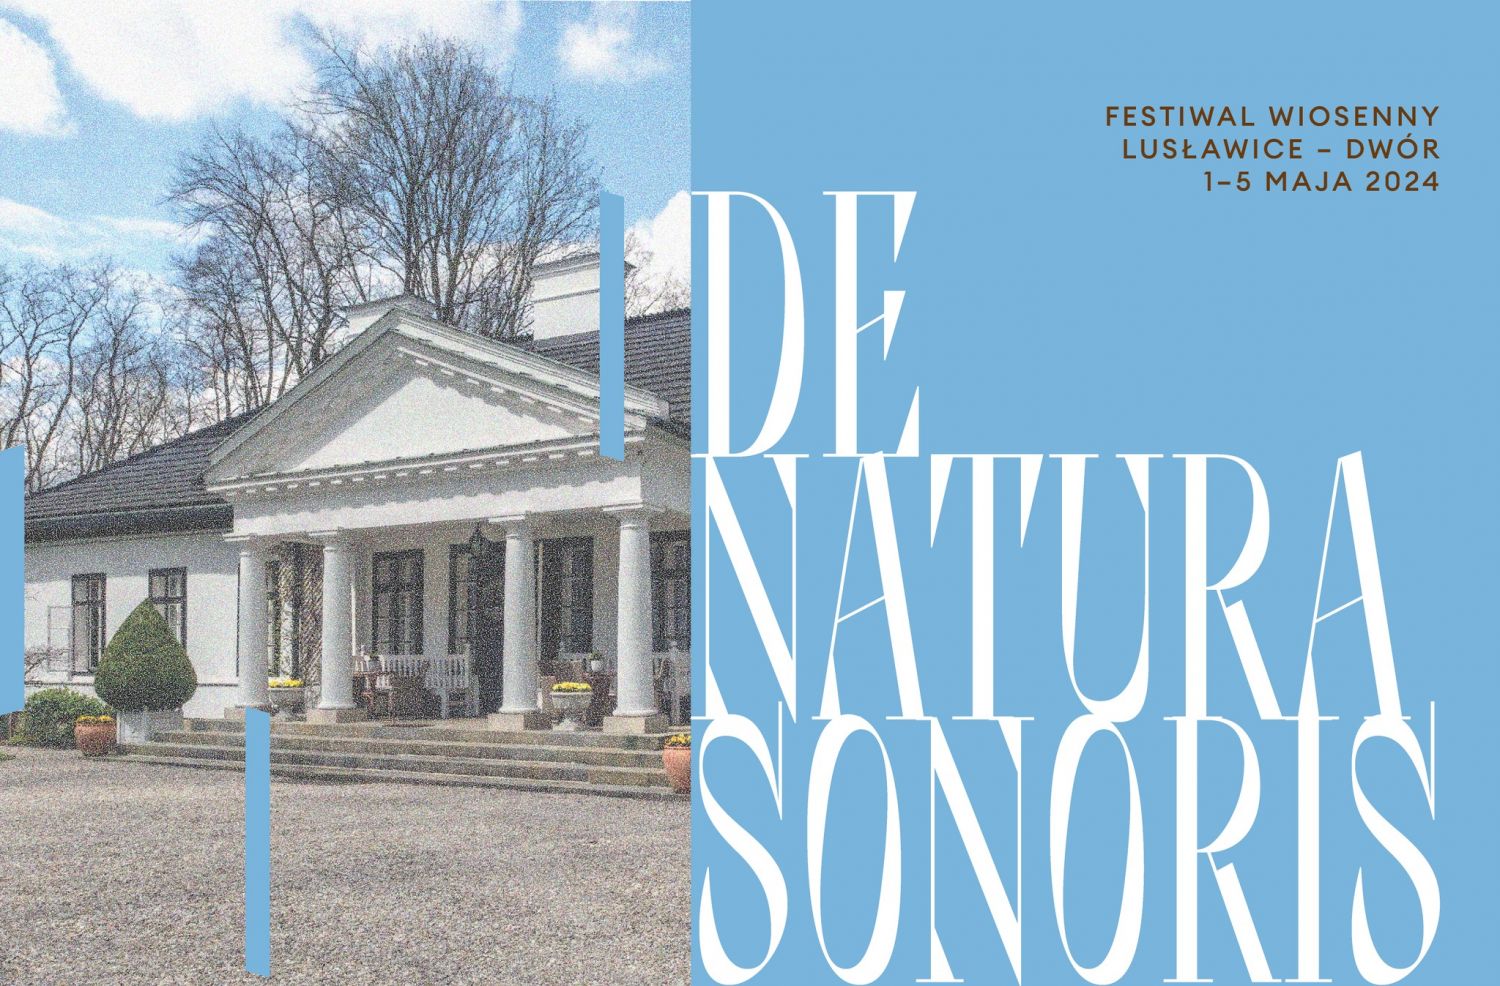 Festiwal De Natura Sonoris